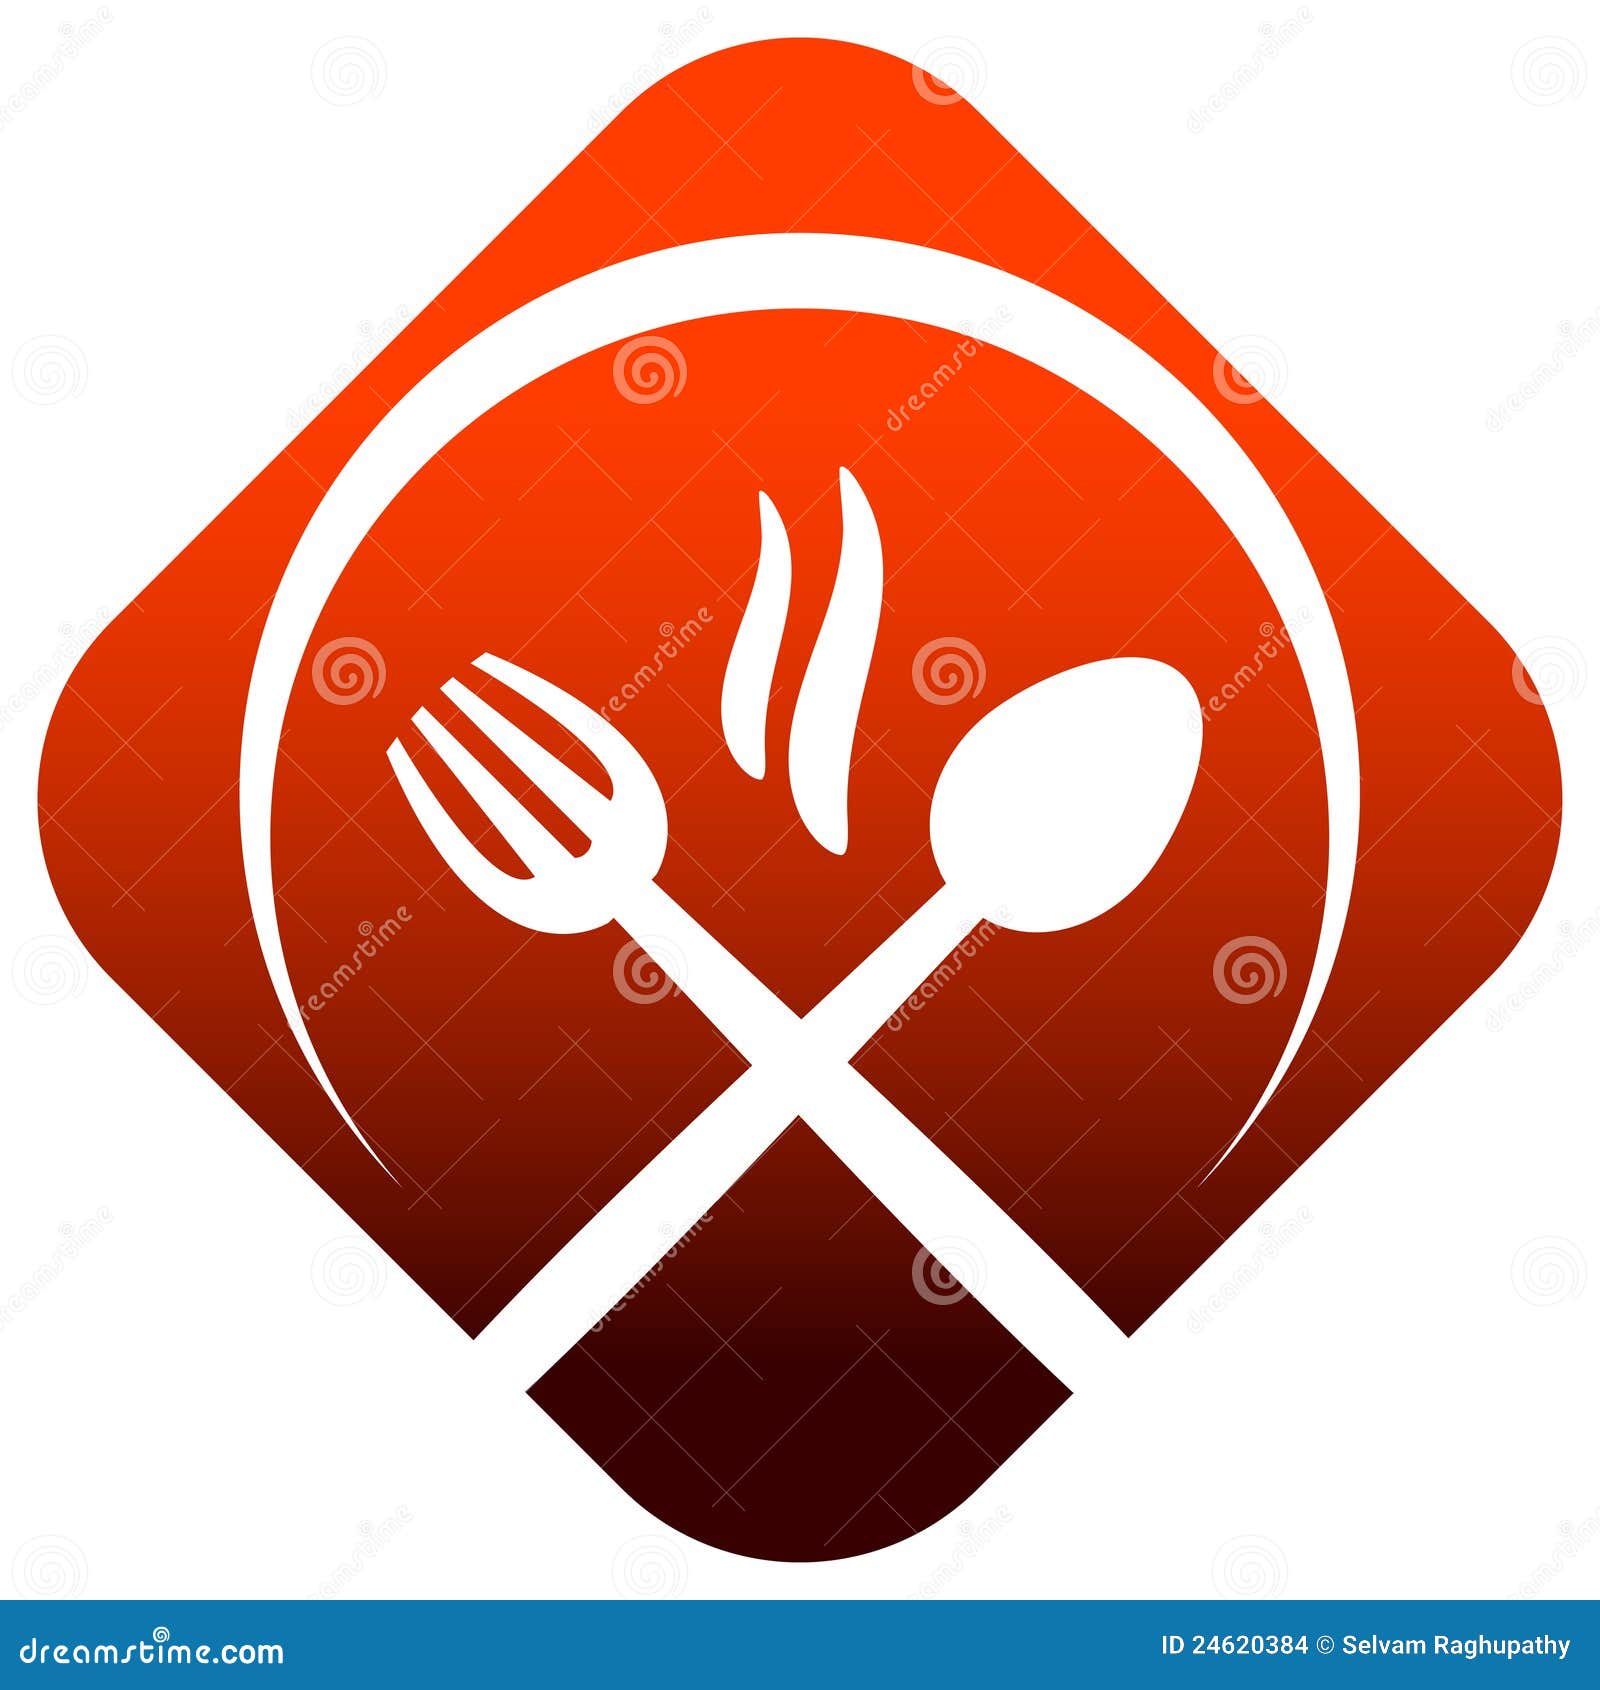 dinner logo